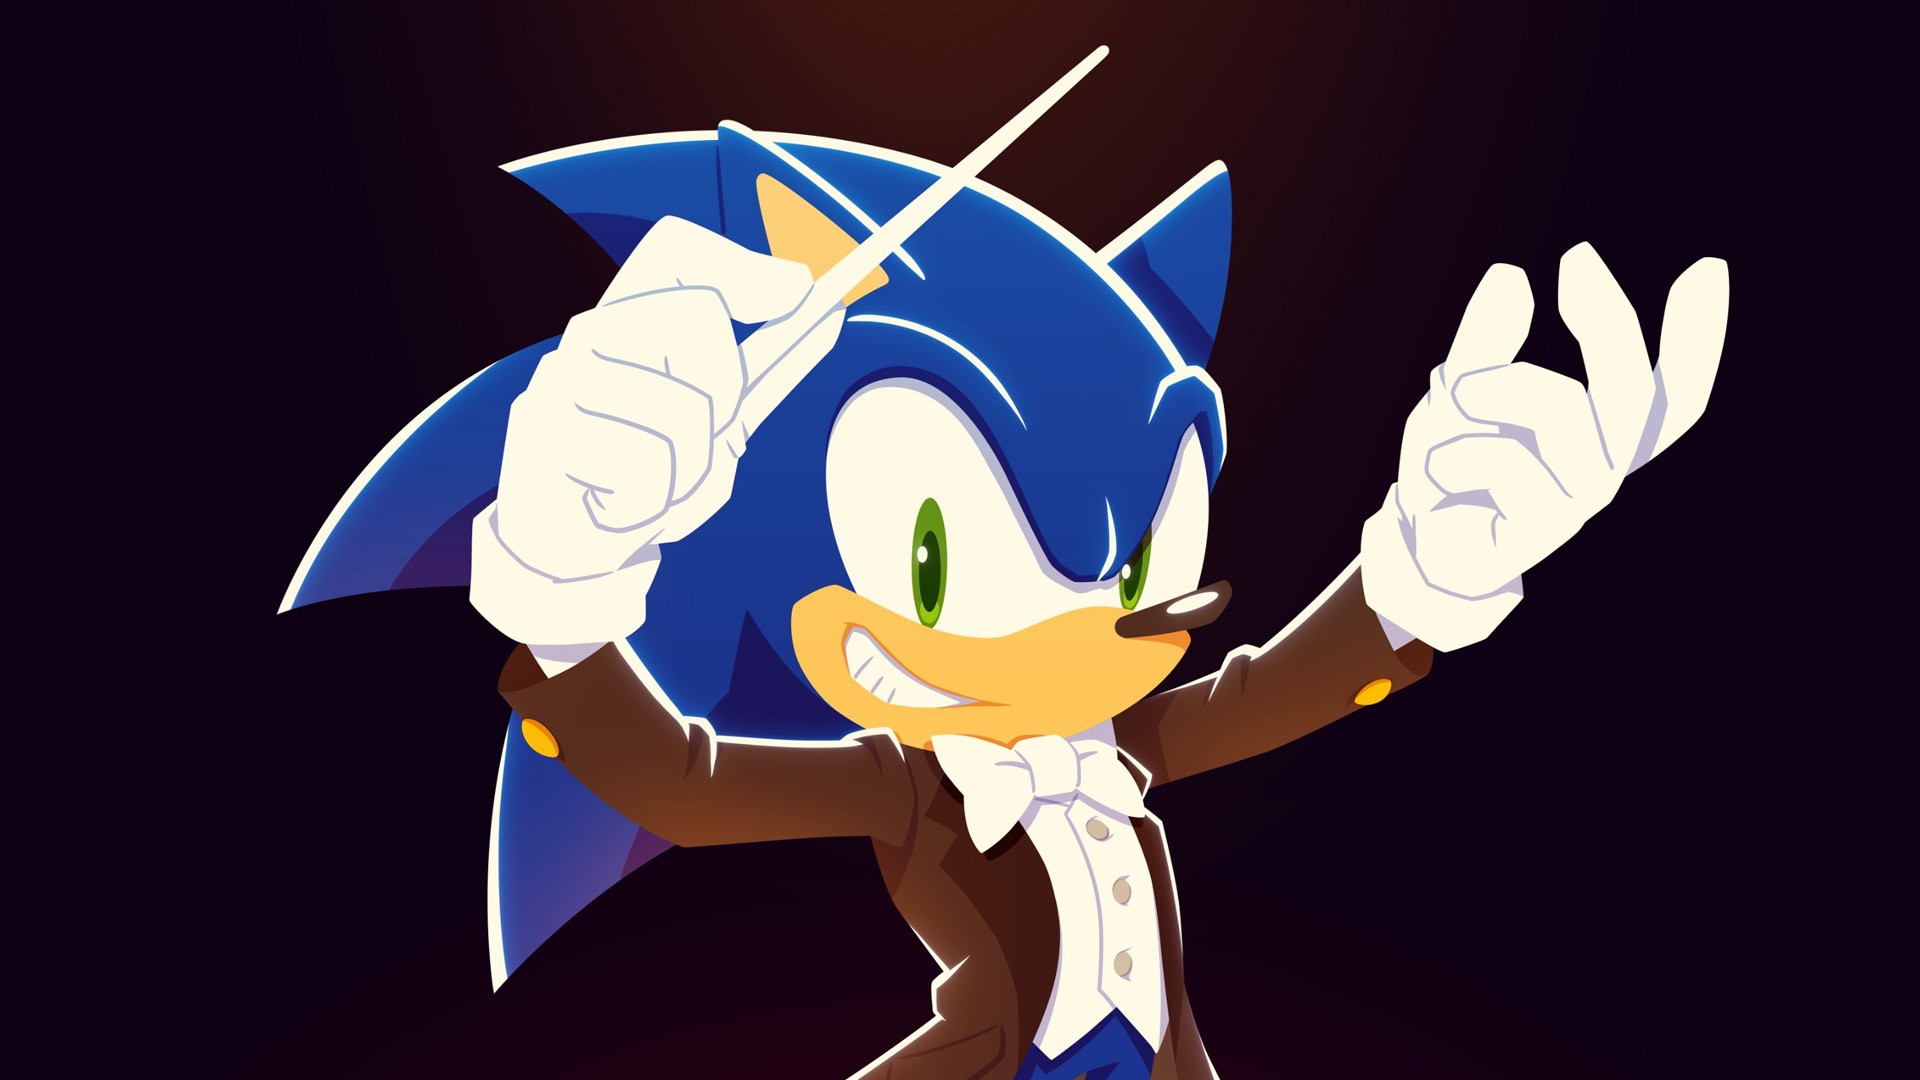 Sega anuncia o evento “Sonic Central” em comemoração ao 30º